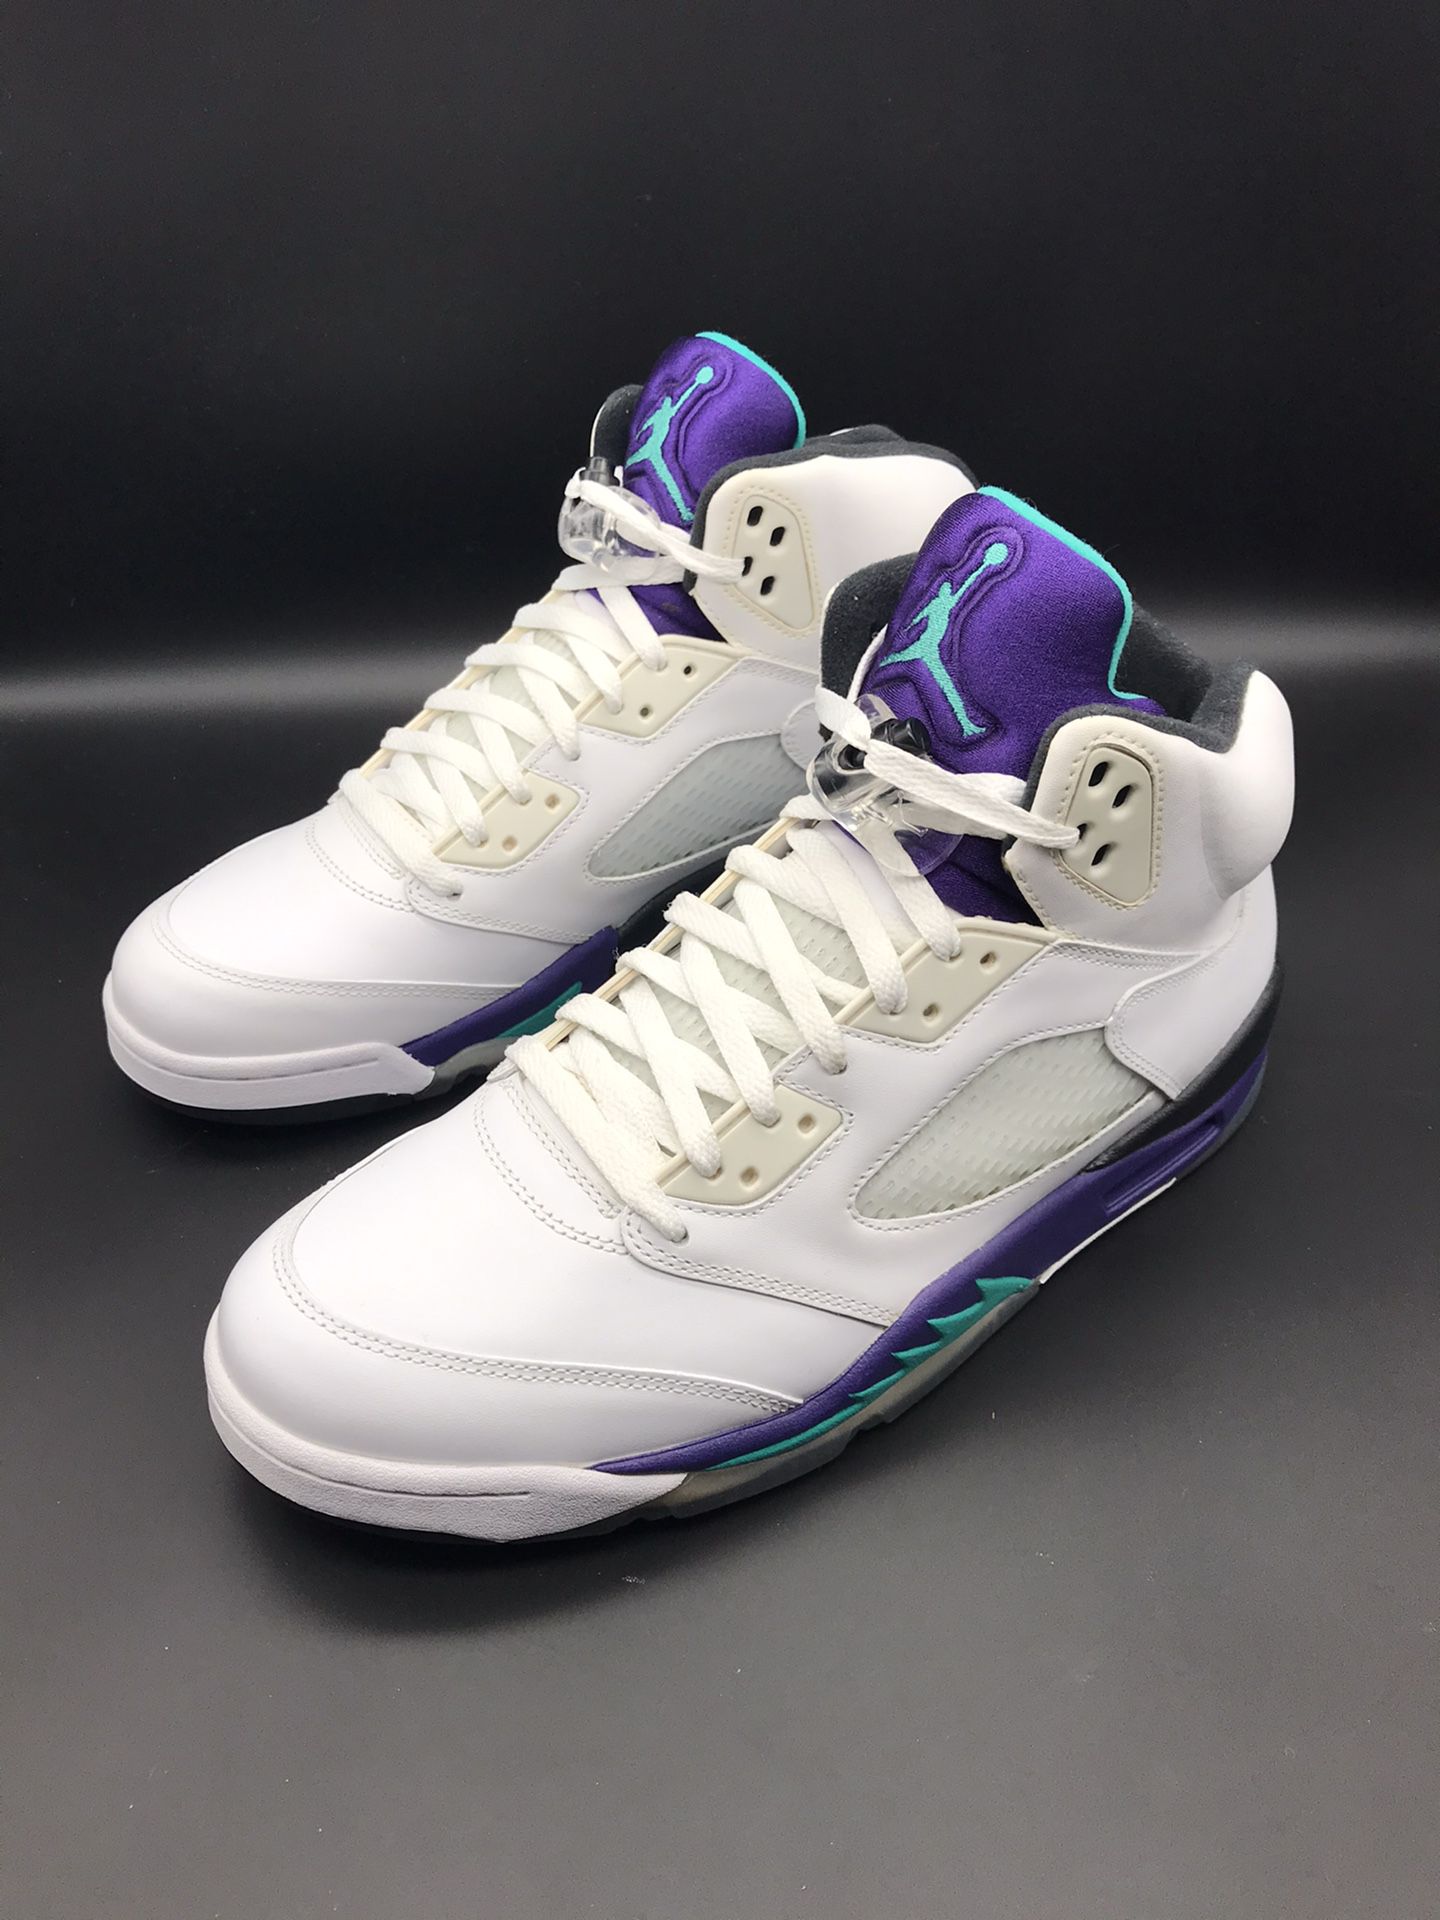 Men's Nike Air Jordan 5 V Retro Grape 2013 White Purple Size 11.5 Authentic